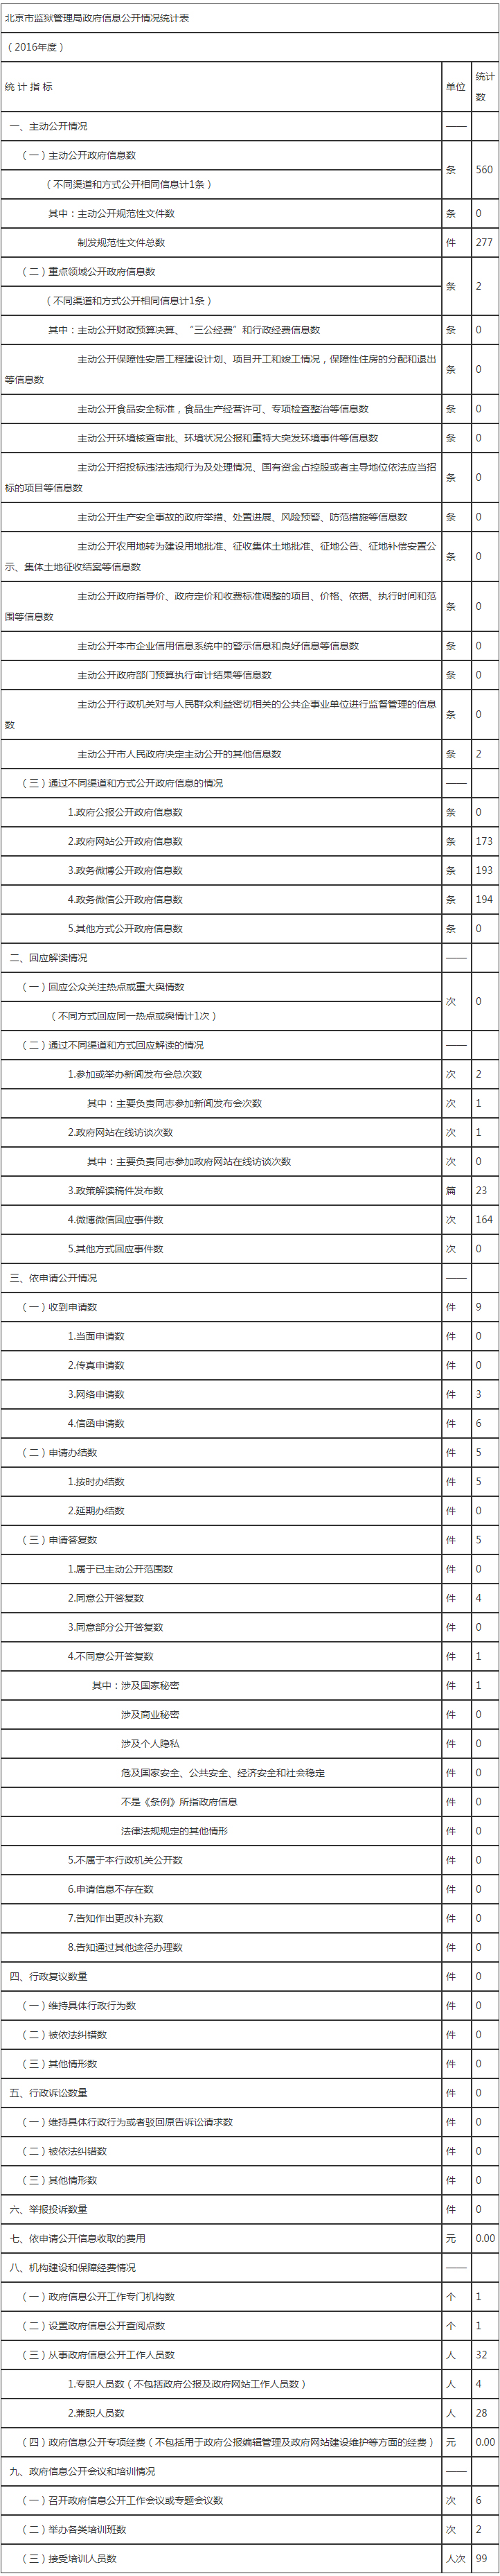 北京市監獄管理局政府信息公開情況統計表